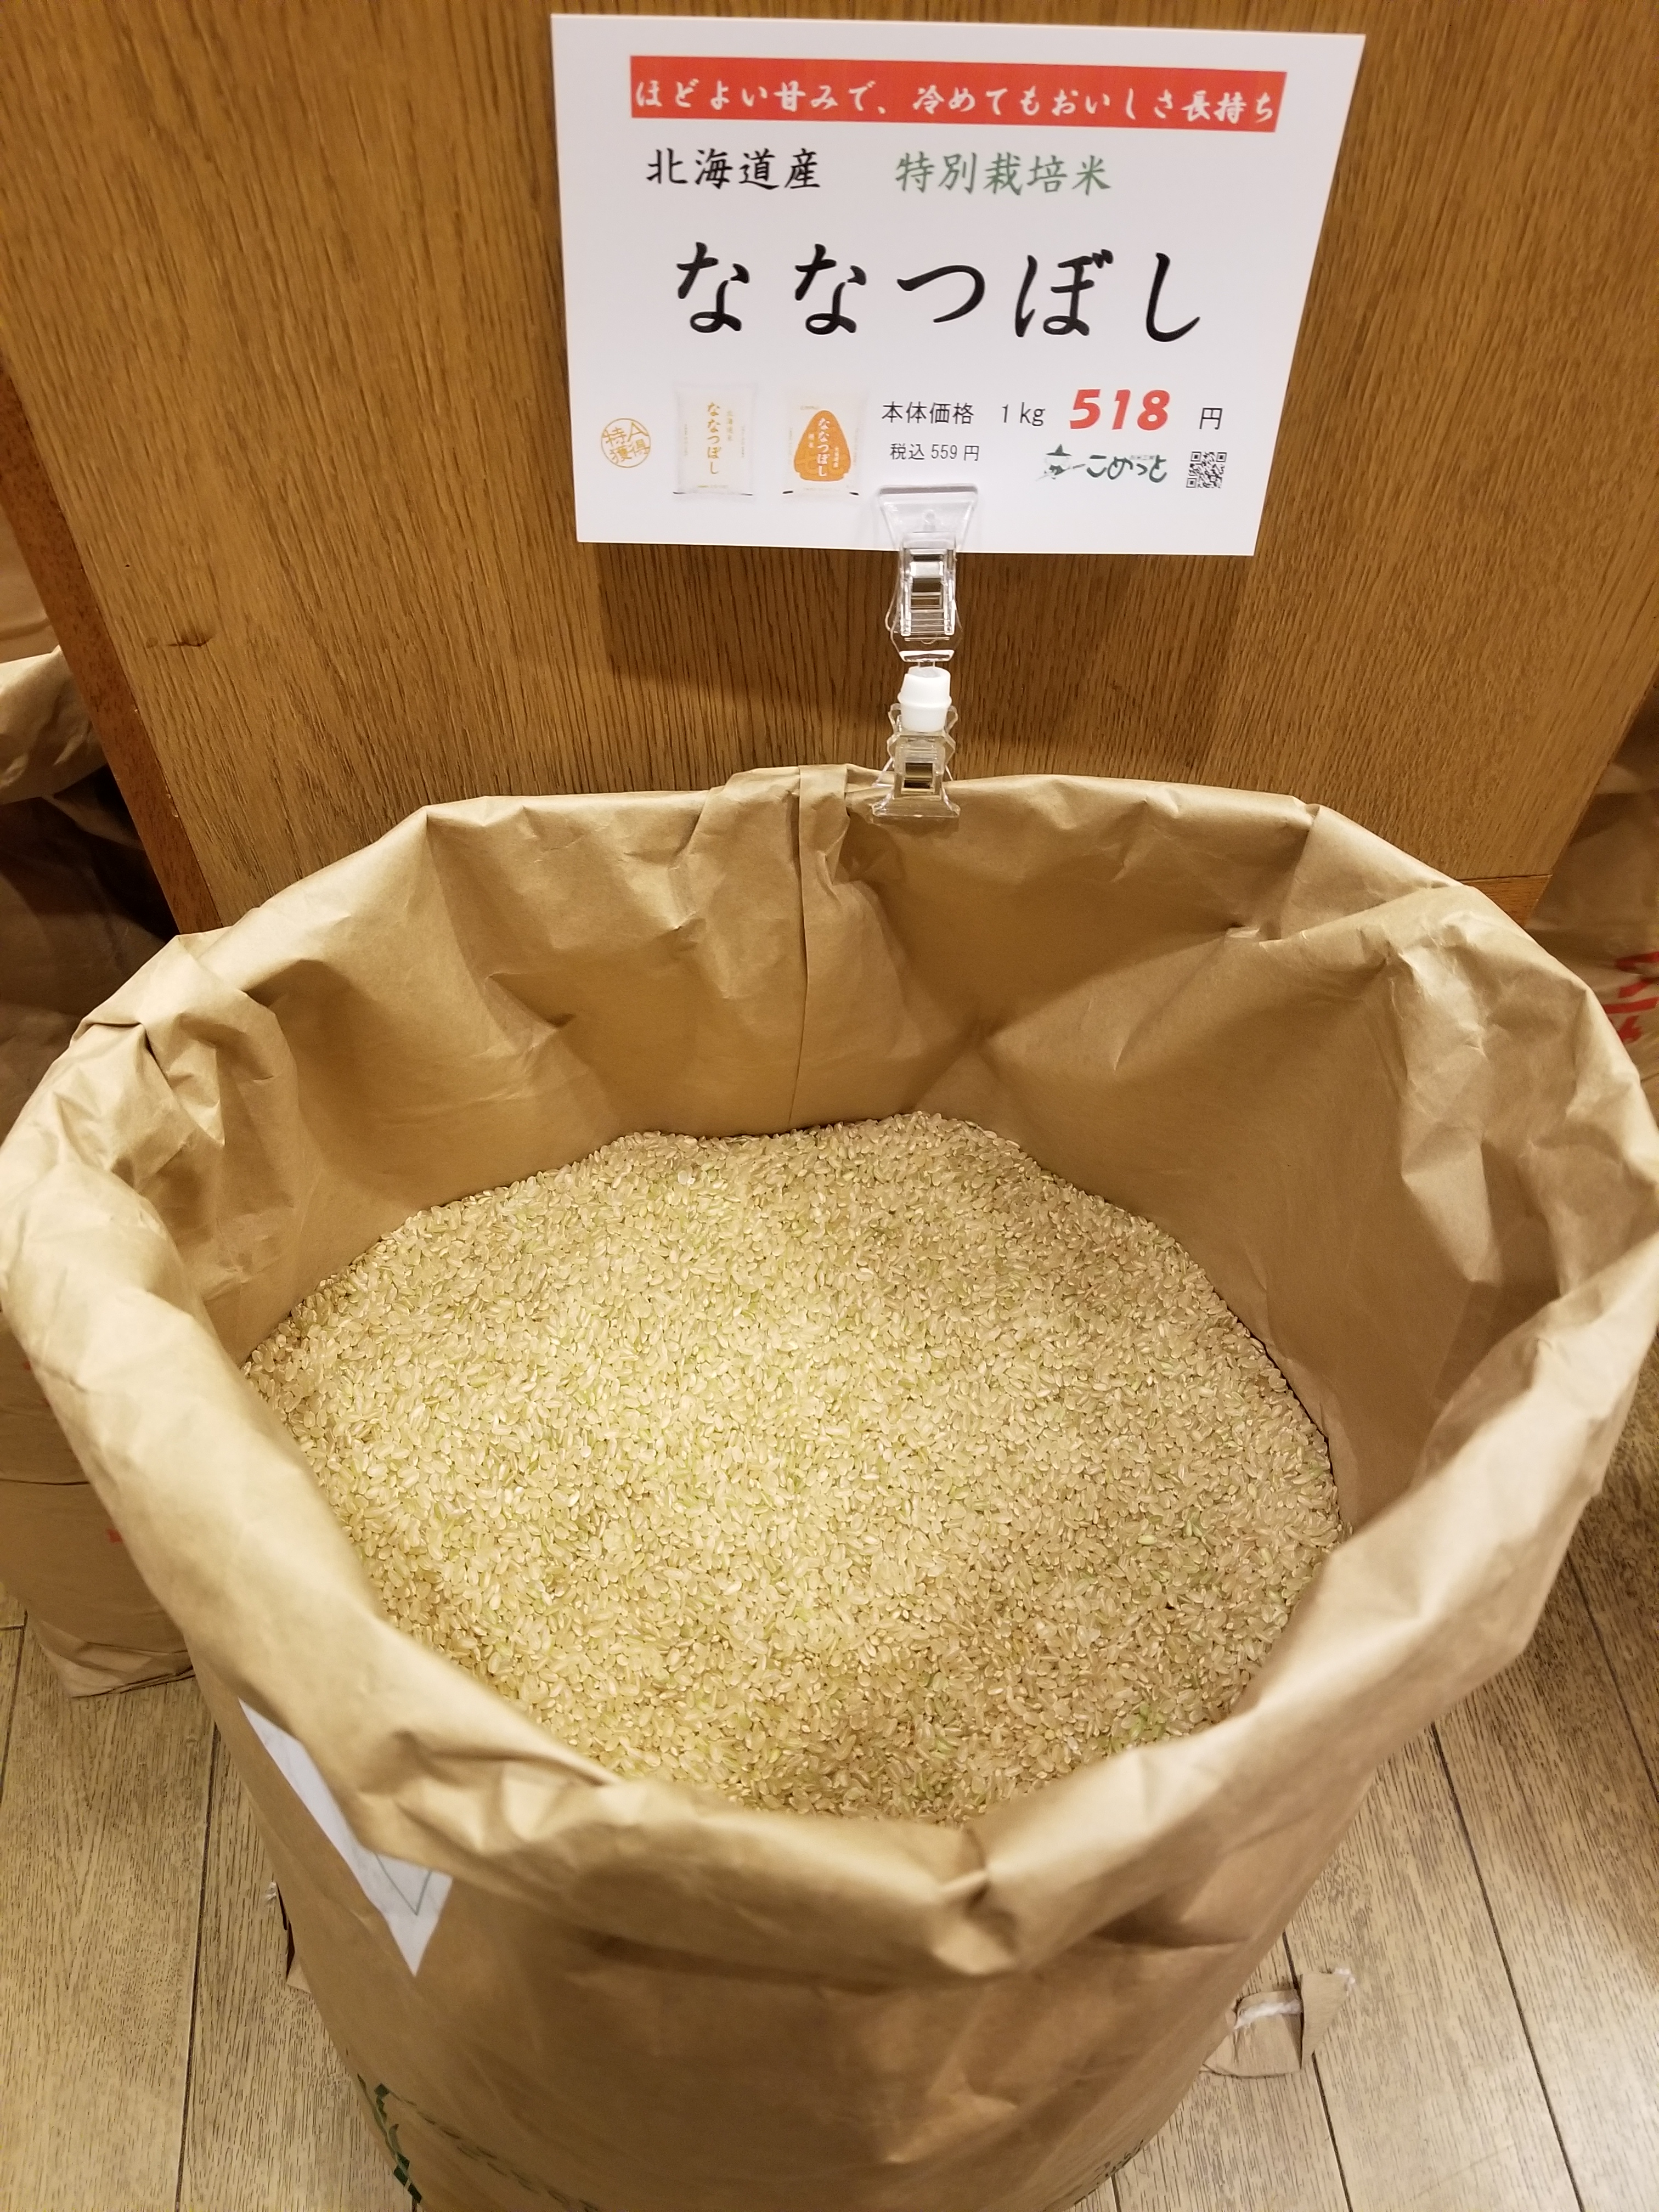 北海道特別栽培米「ななつぼし」 | お米工房こめっと | 愛知県田原市のお米マイスター認定の米穀店